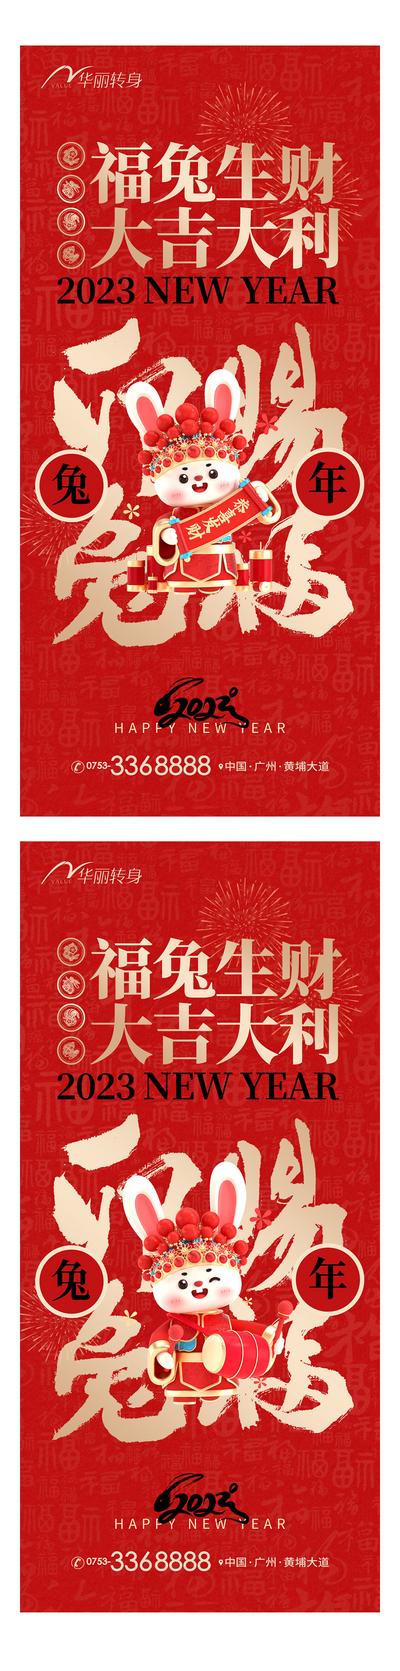 南门网 海报 地产 中国传统节日 春节 年俗 插画 中式